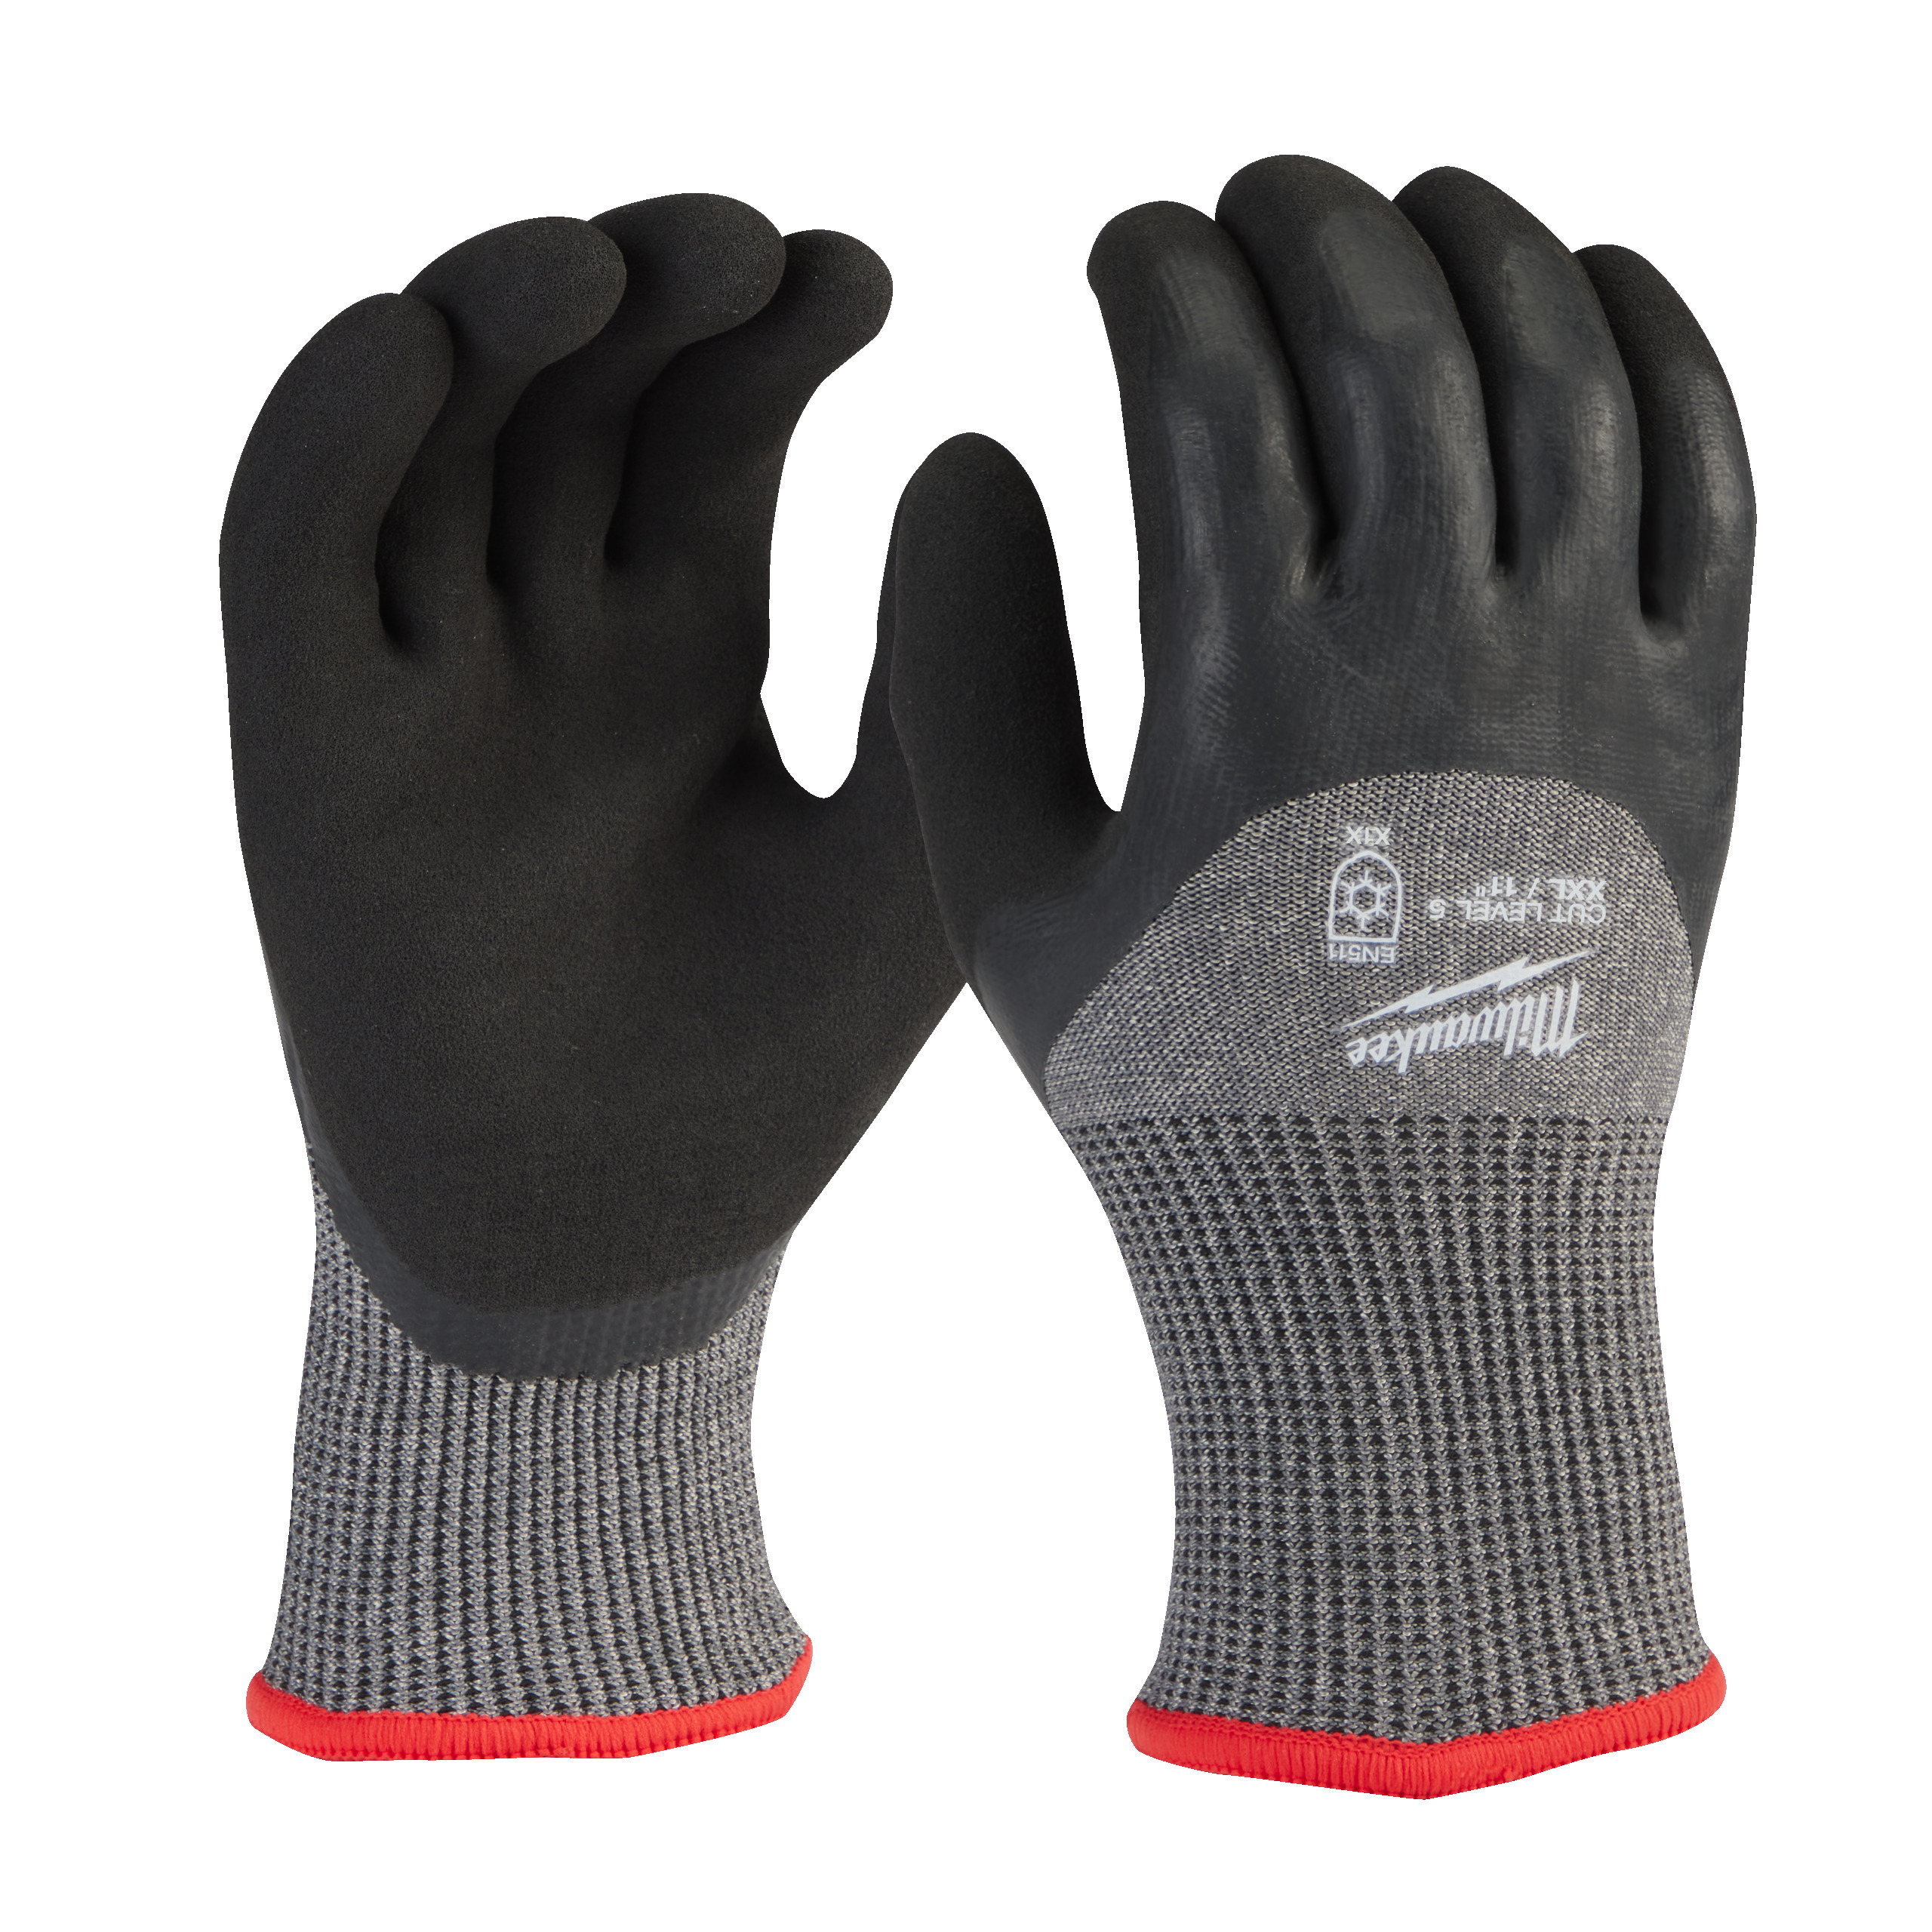 MILWAUKEE 4932479562 Zimní rukavice odolné proti proříznutí Stupeň 5/E -  vel M/8 - 12ks